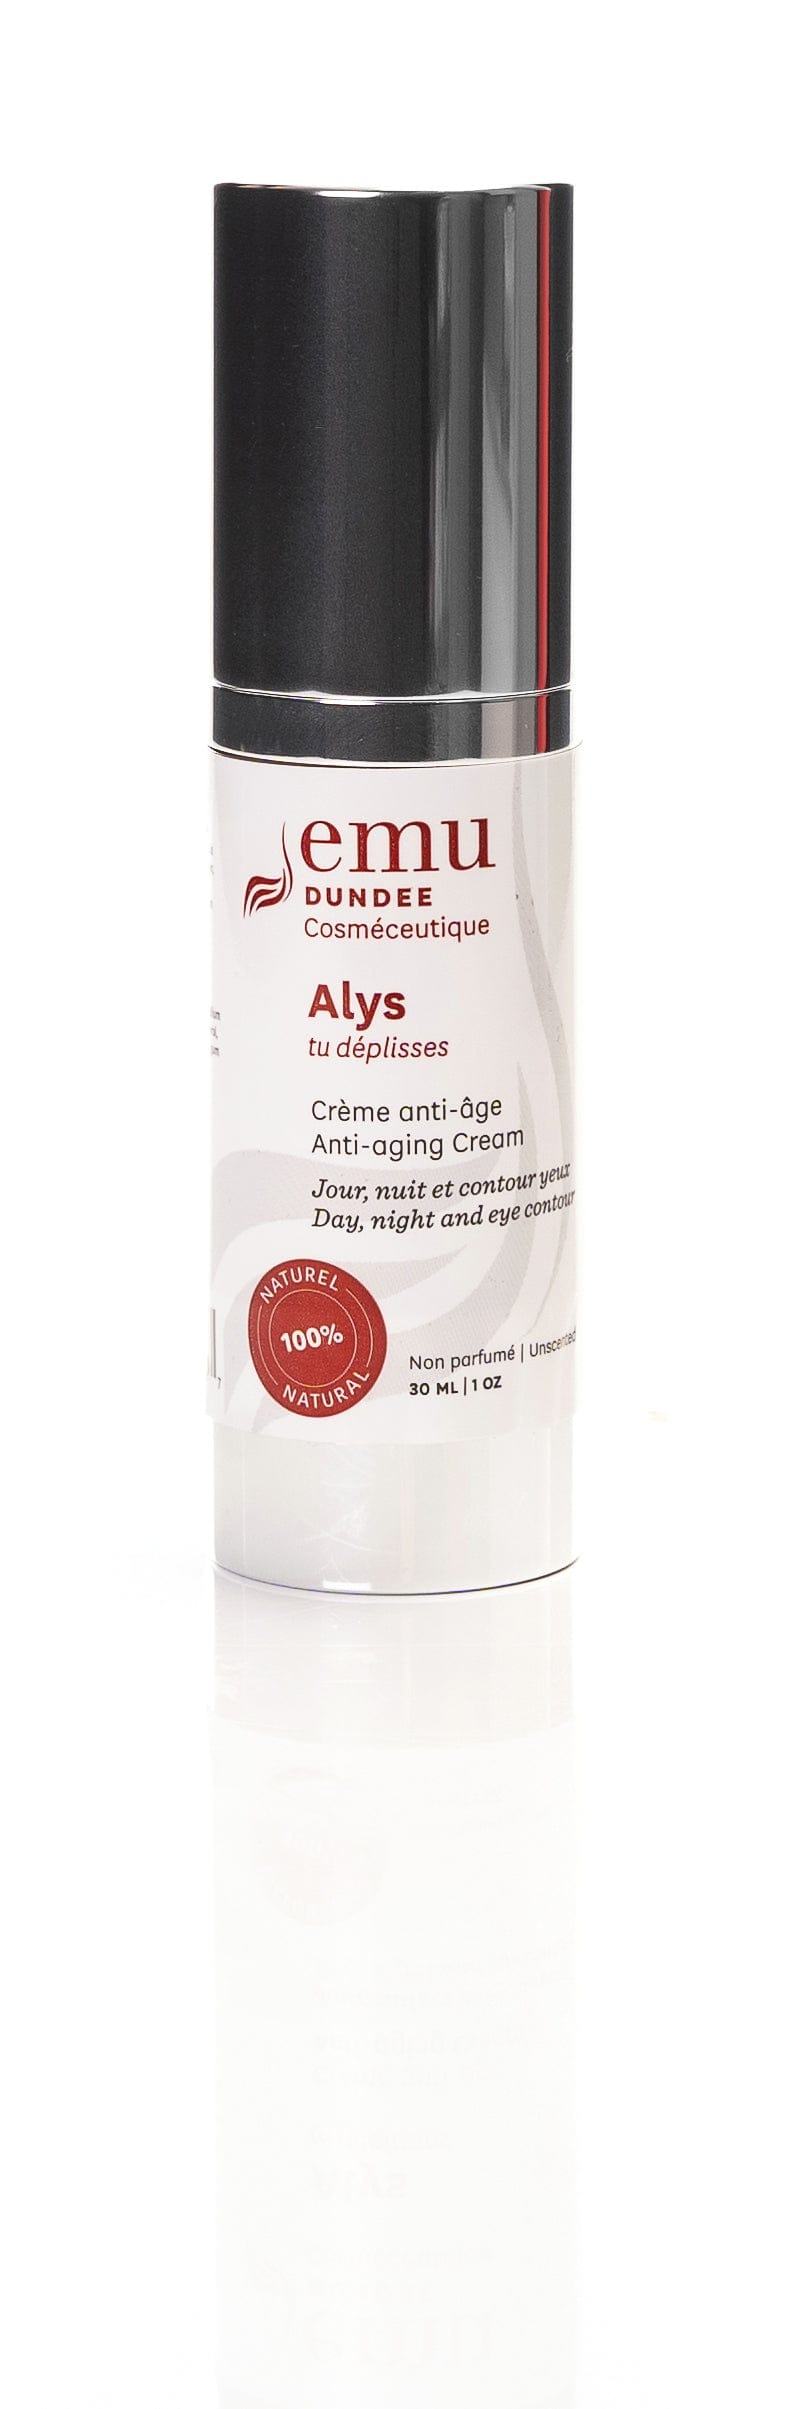 EMU DUNDEE Soins & beauté Crème hydratante ALYS (soin du visage) 30ml